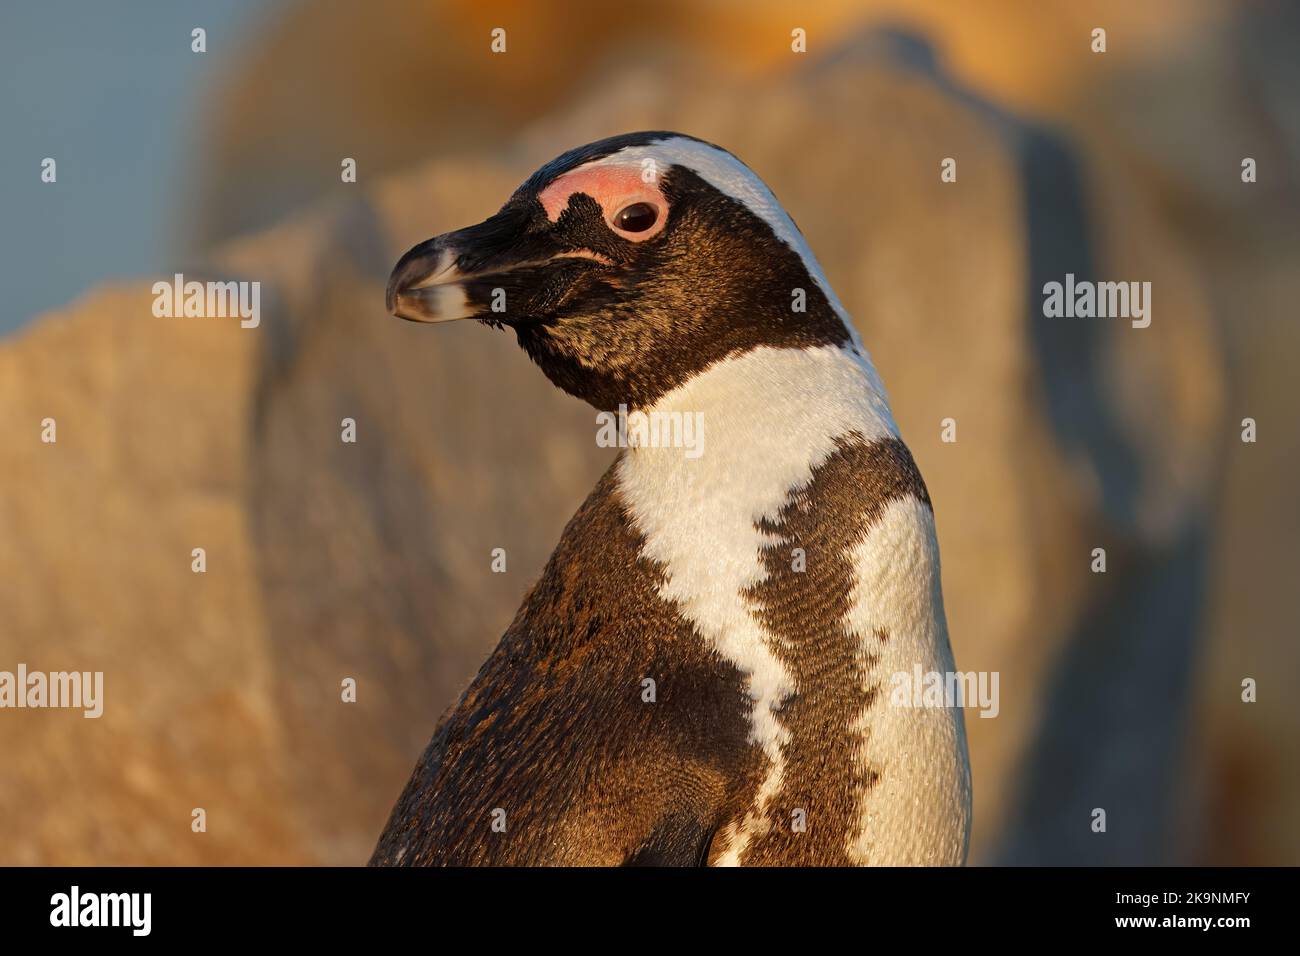 Ritratto di un pinguino africano in via di estinzione (Spheniscus demersus), Sudafrica Foto Stock